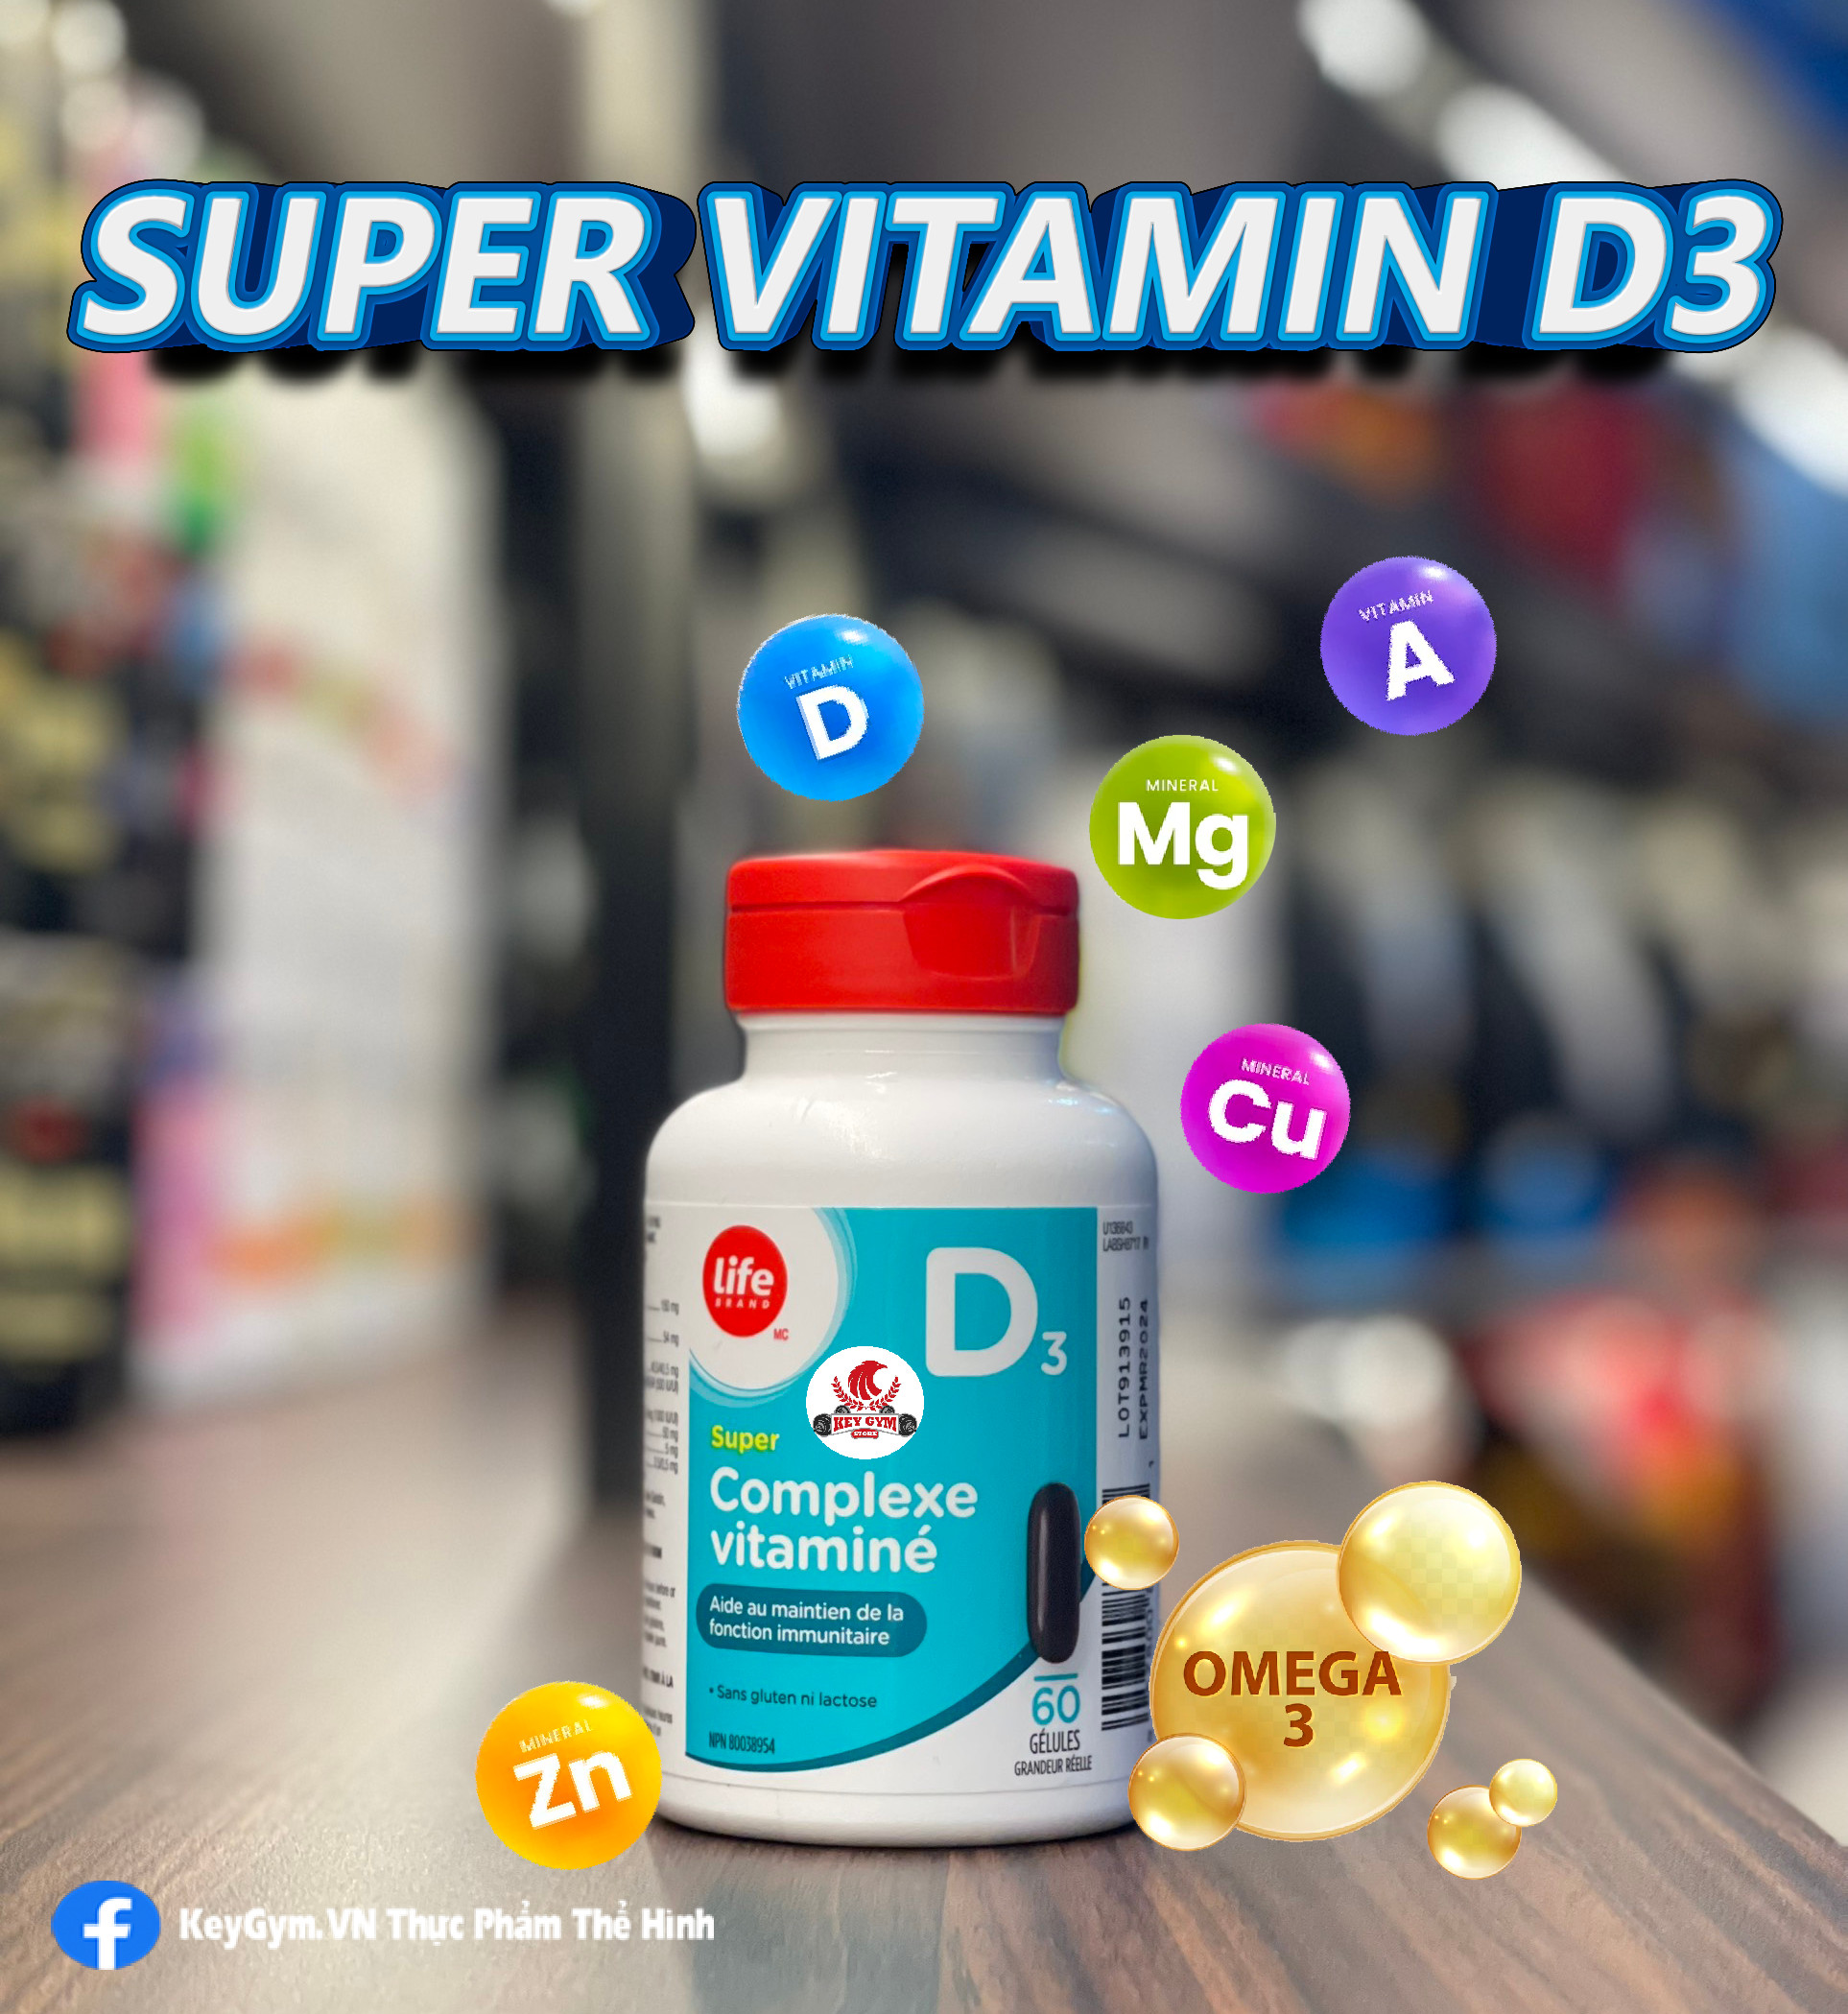 Life Brand D3 Super Vitamin Complex